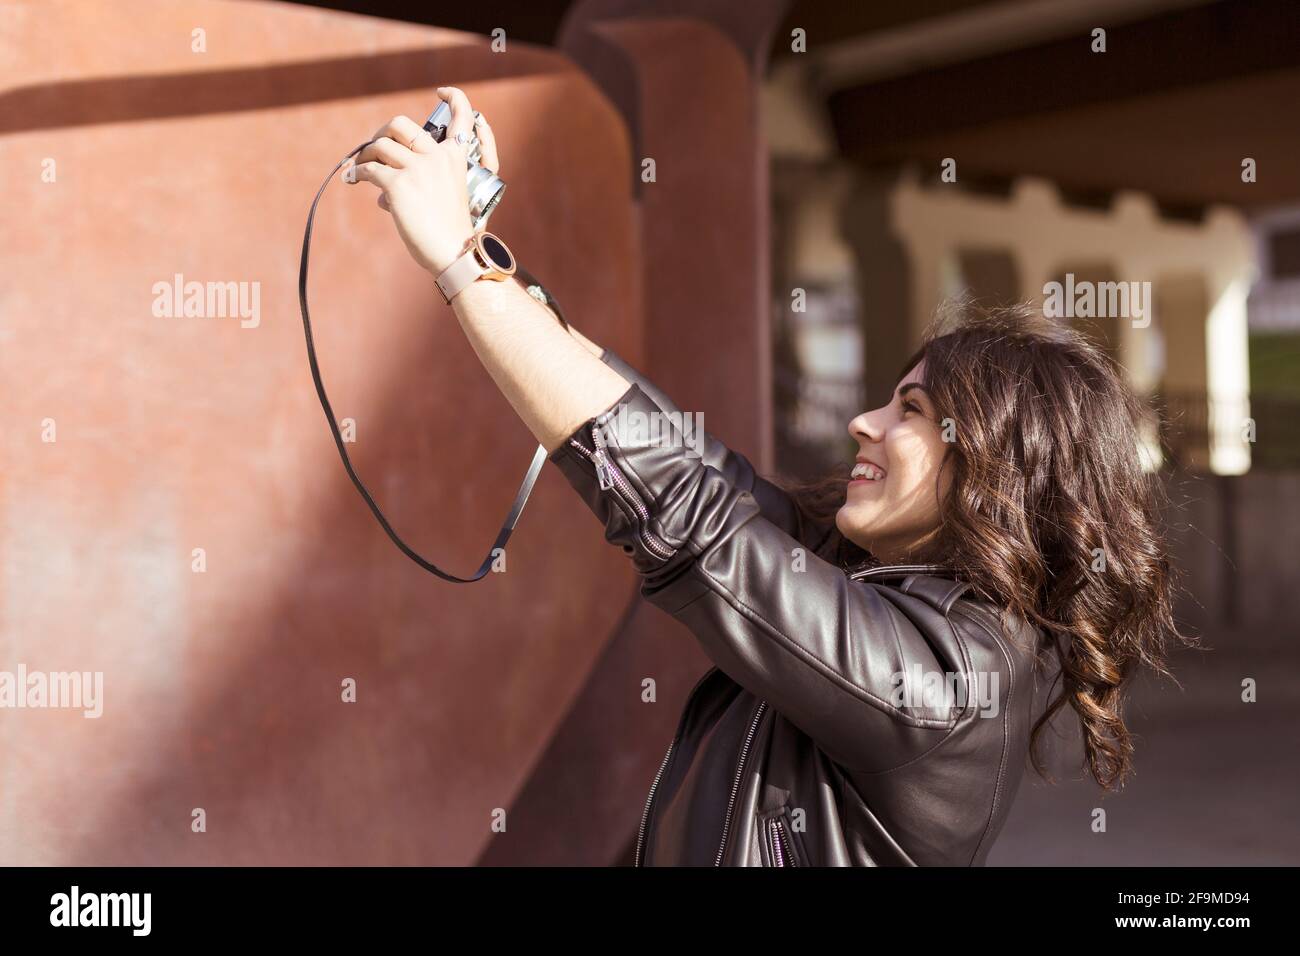 Junge glückliche kaukasische Frau, die mit einer analogen Kamera ein Foto von sich selbst macht. Platz für Text. Stockfoto